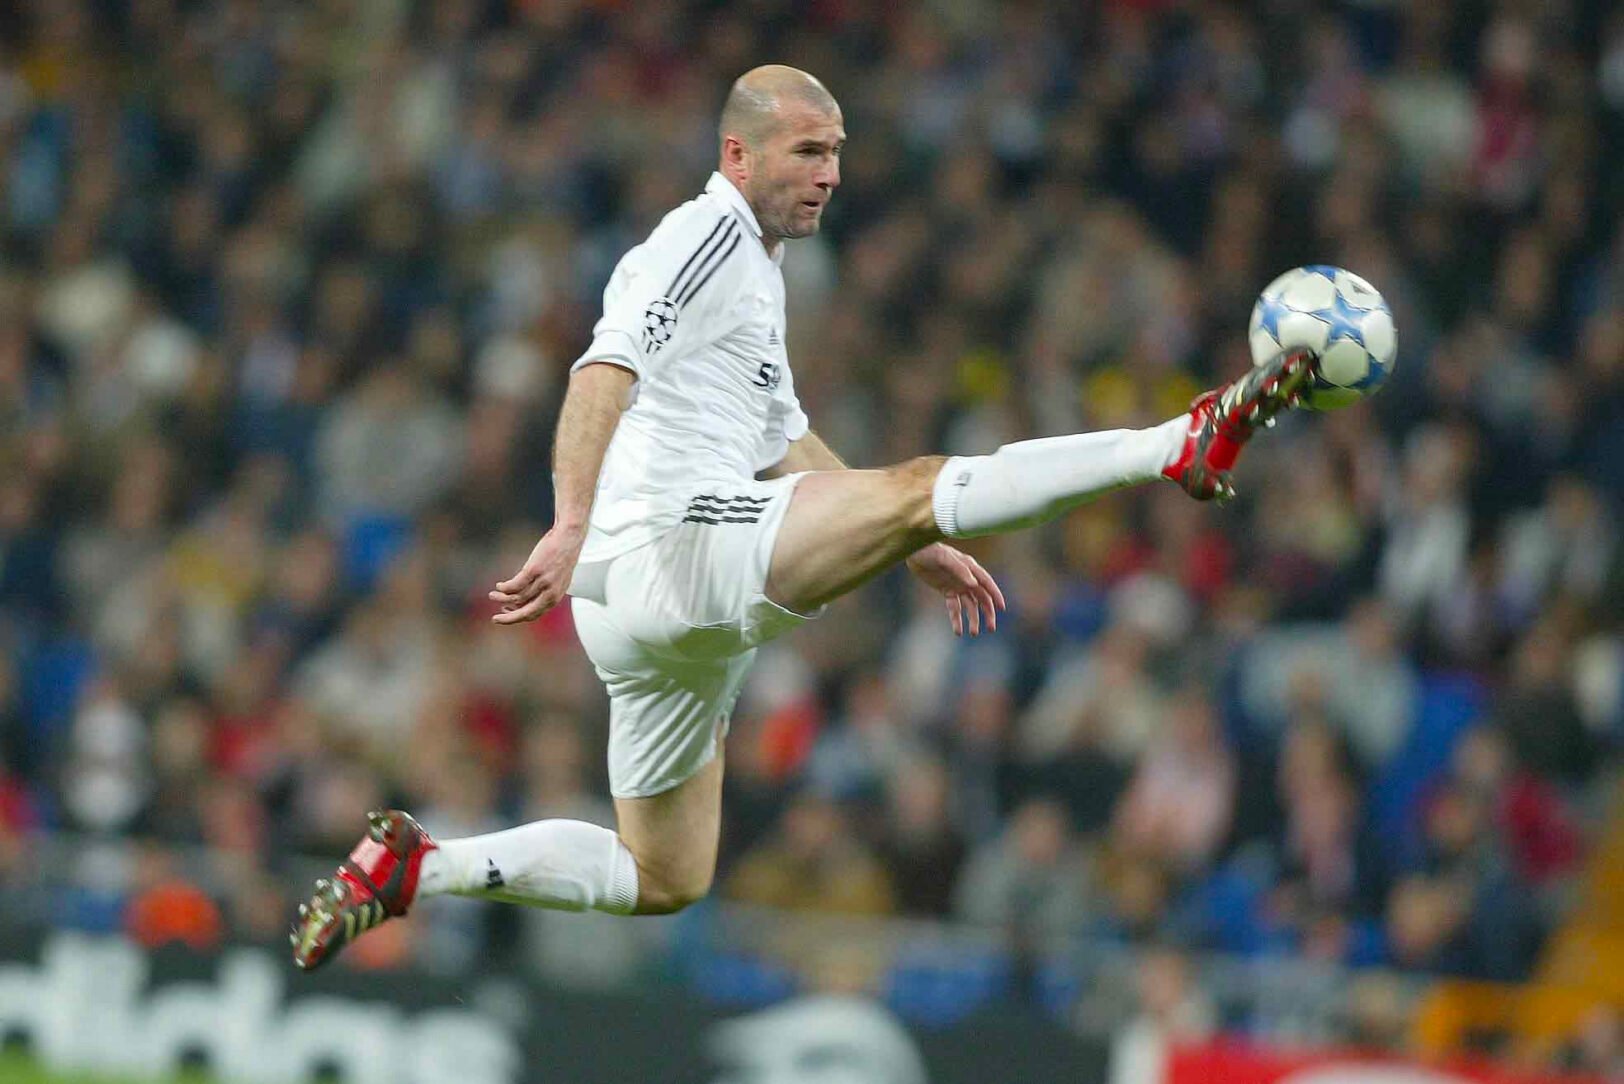 Le premier rang de notre liste des meilleurs footballeurs français de tous les temps est occupé par la légende Zinédine Zidane